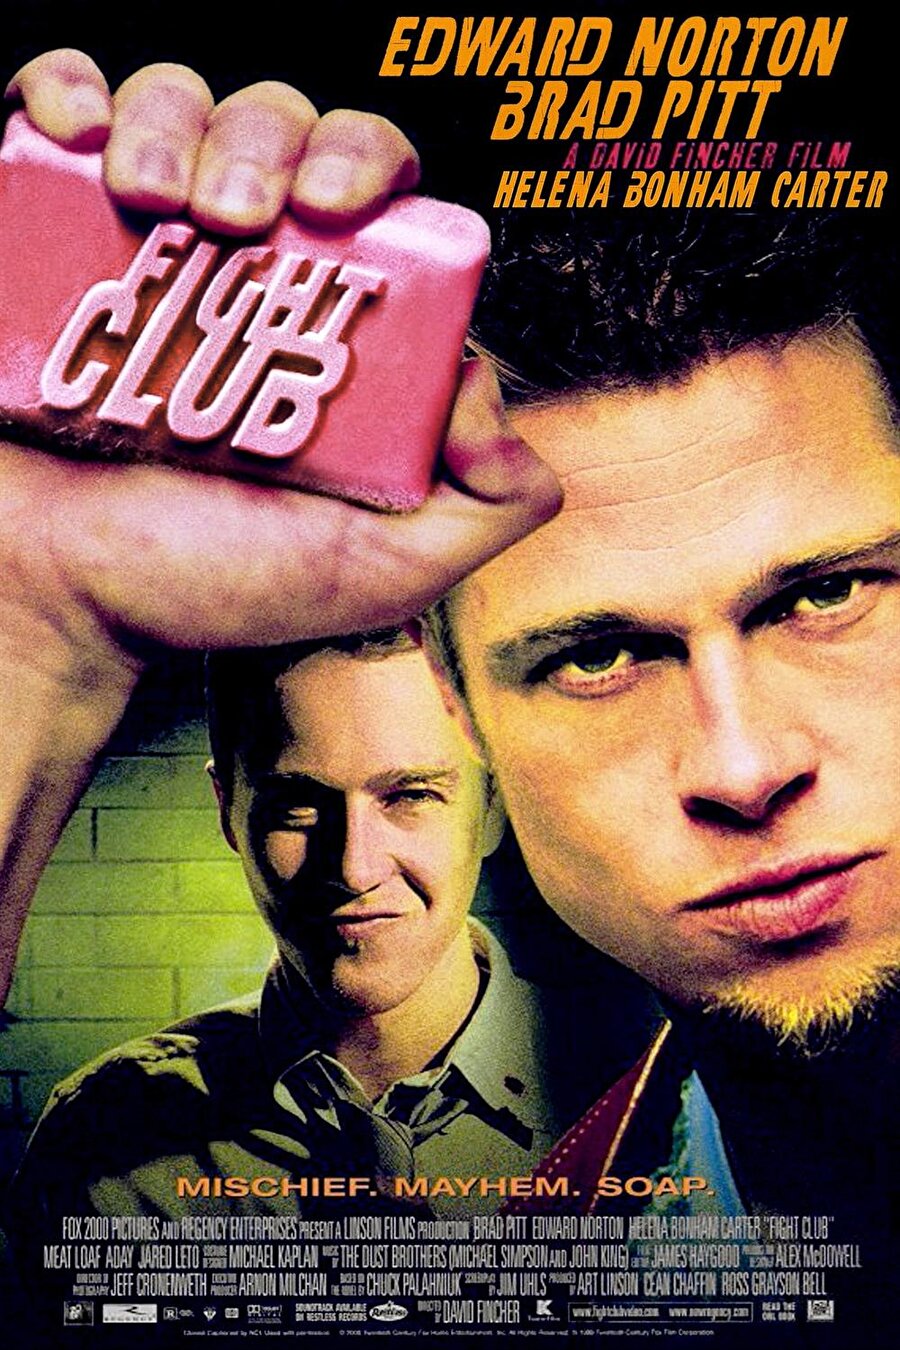 Dövüş Kulübü, Chuck Palahniuk tarafından yazılmış olan aynı isimli roman üzerinden çekilen kült filmdir. 1999 yapımı olan film, David Fincher tarafından yönetilmiştir ve başrollerde Brad Pitt, Edward Norton ve Helena Bonham Carter rol almıştır